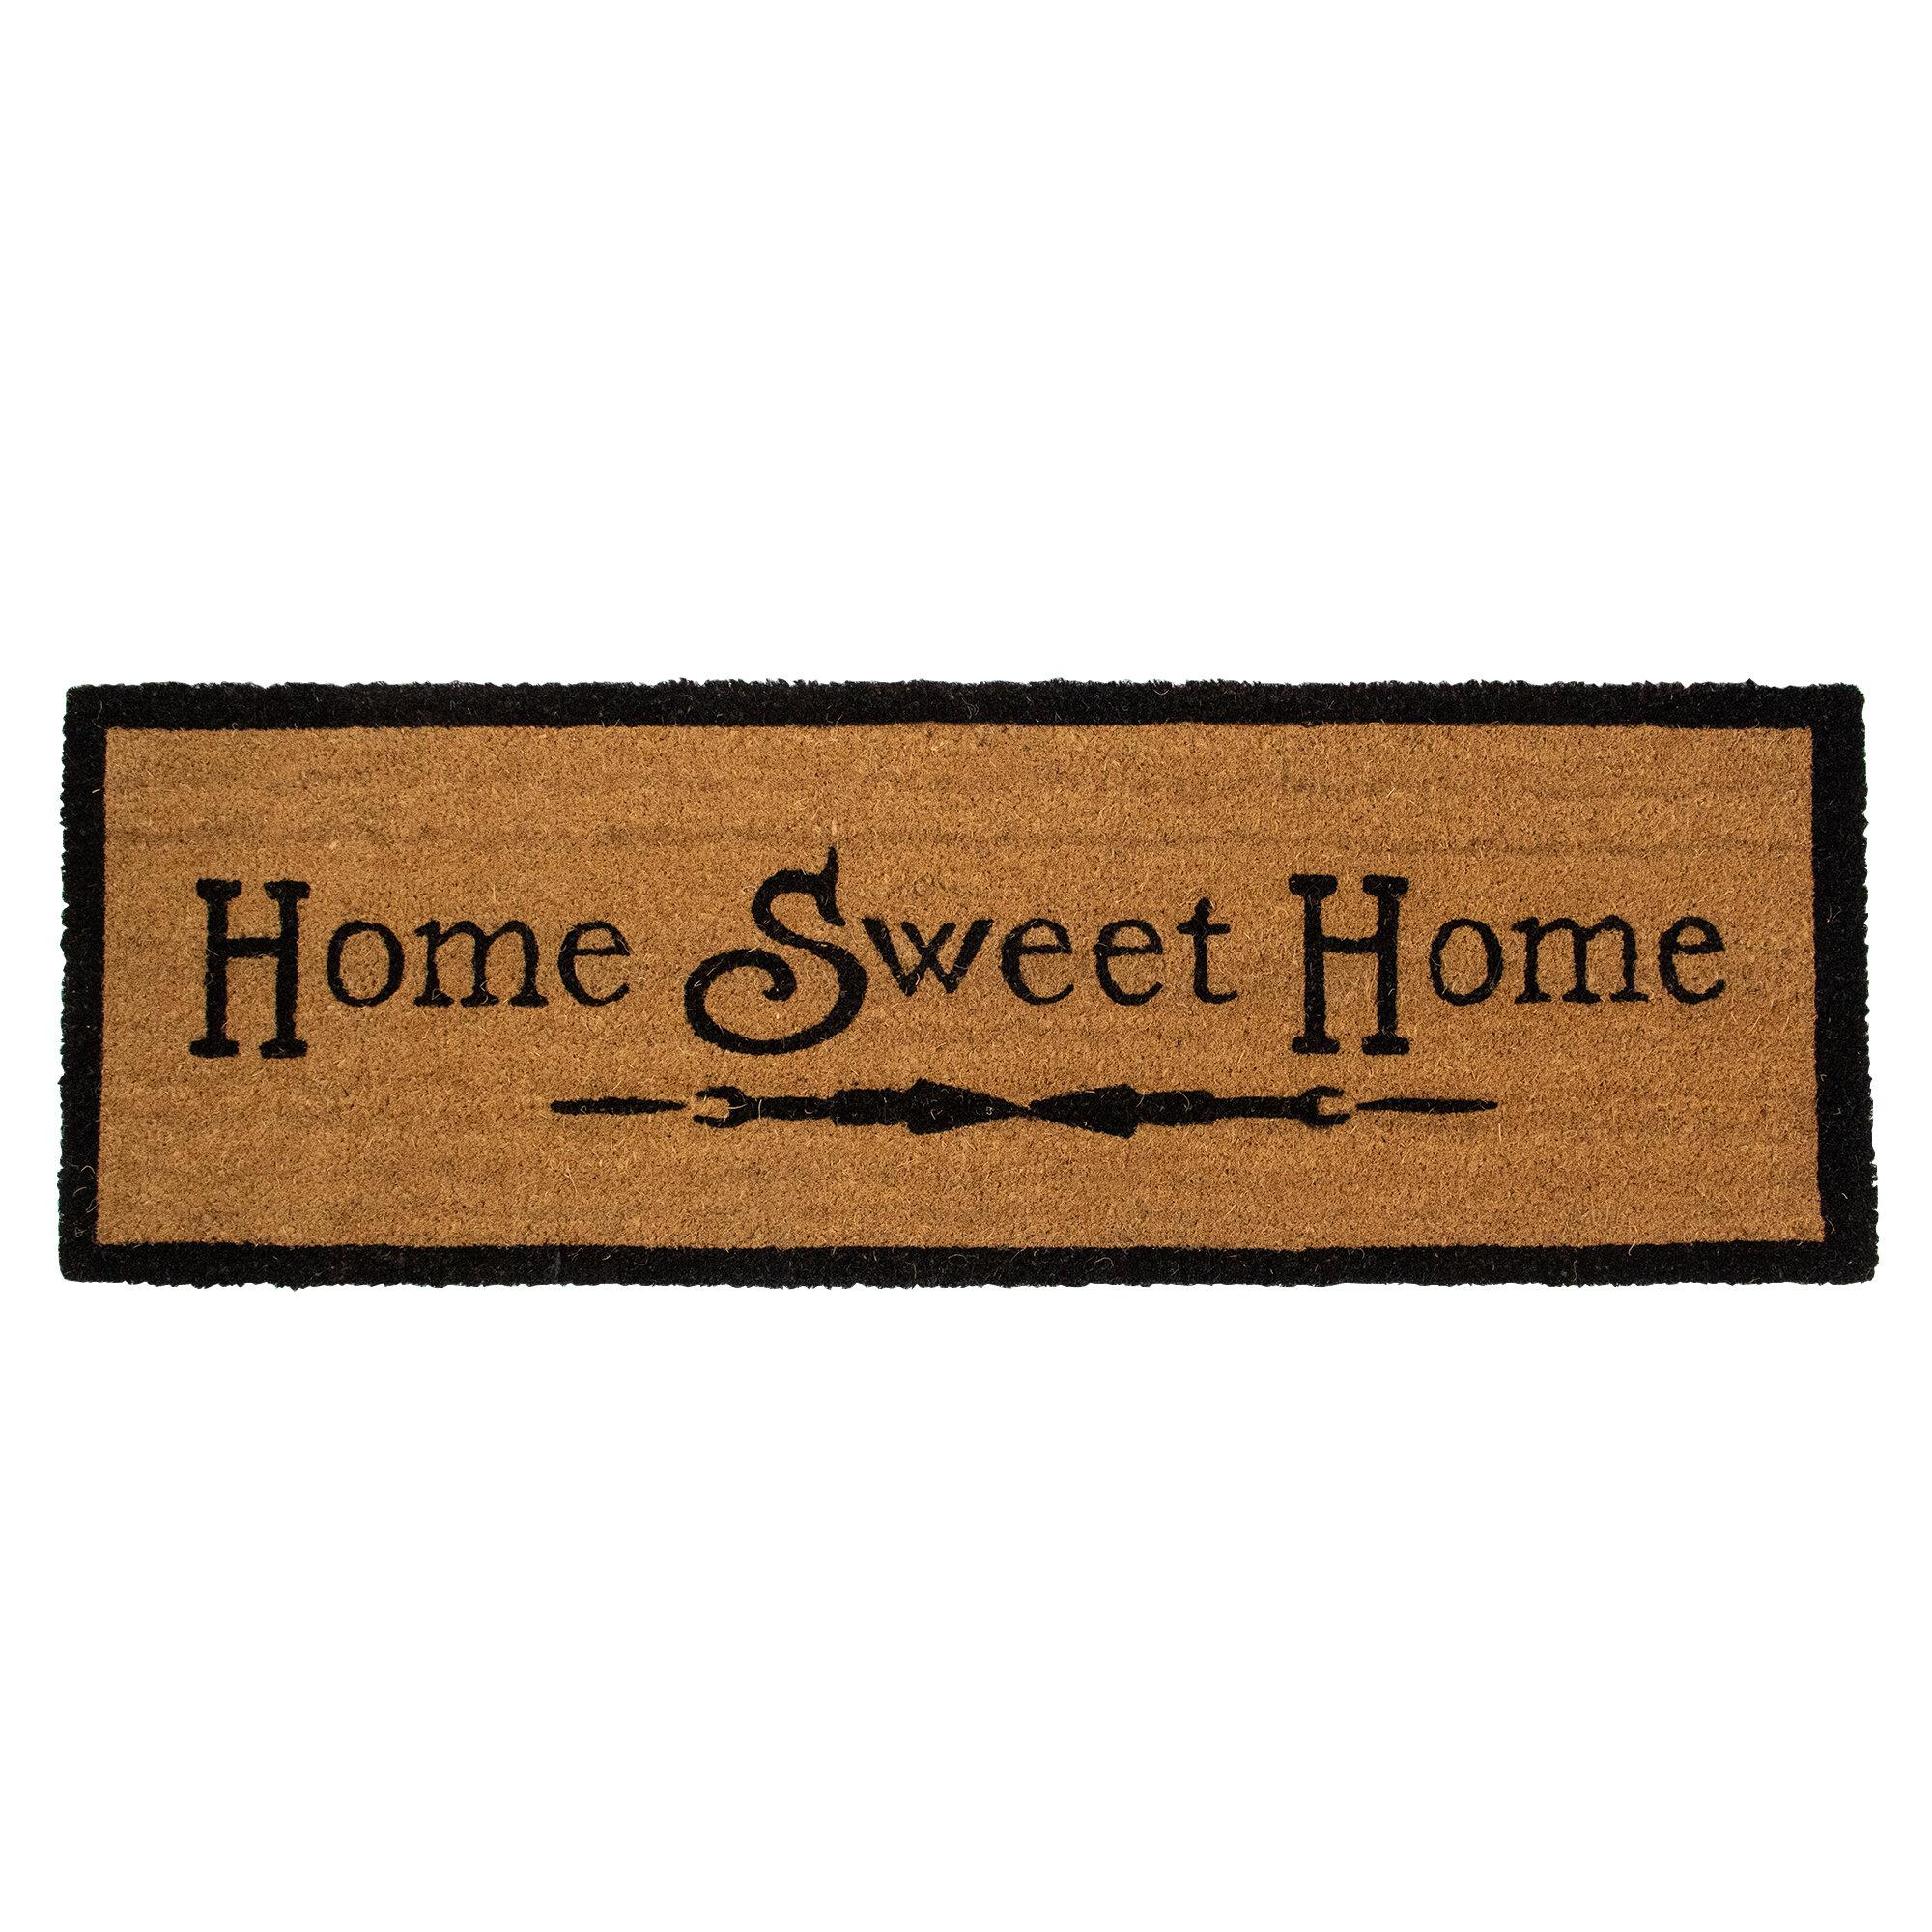 https://assets.wfcdn.com/im/29862382/compr-r85/1851/185181192/natural-coir-rectangular-home-sweet-home-doormat-16-x-48.jpg